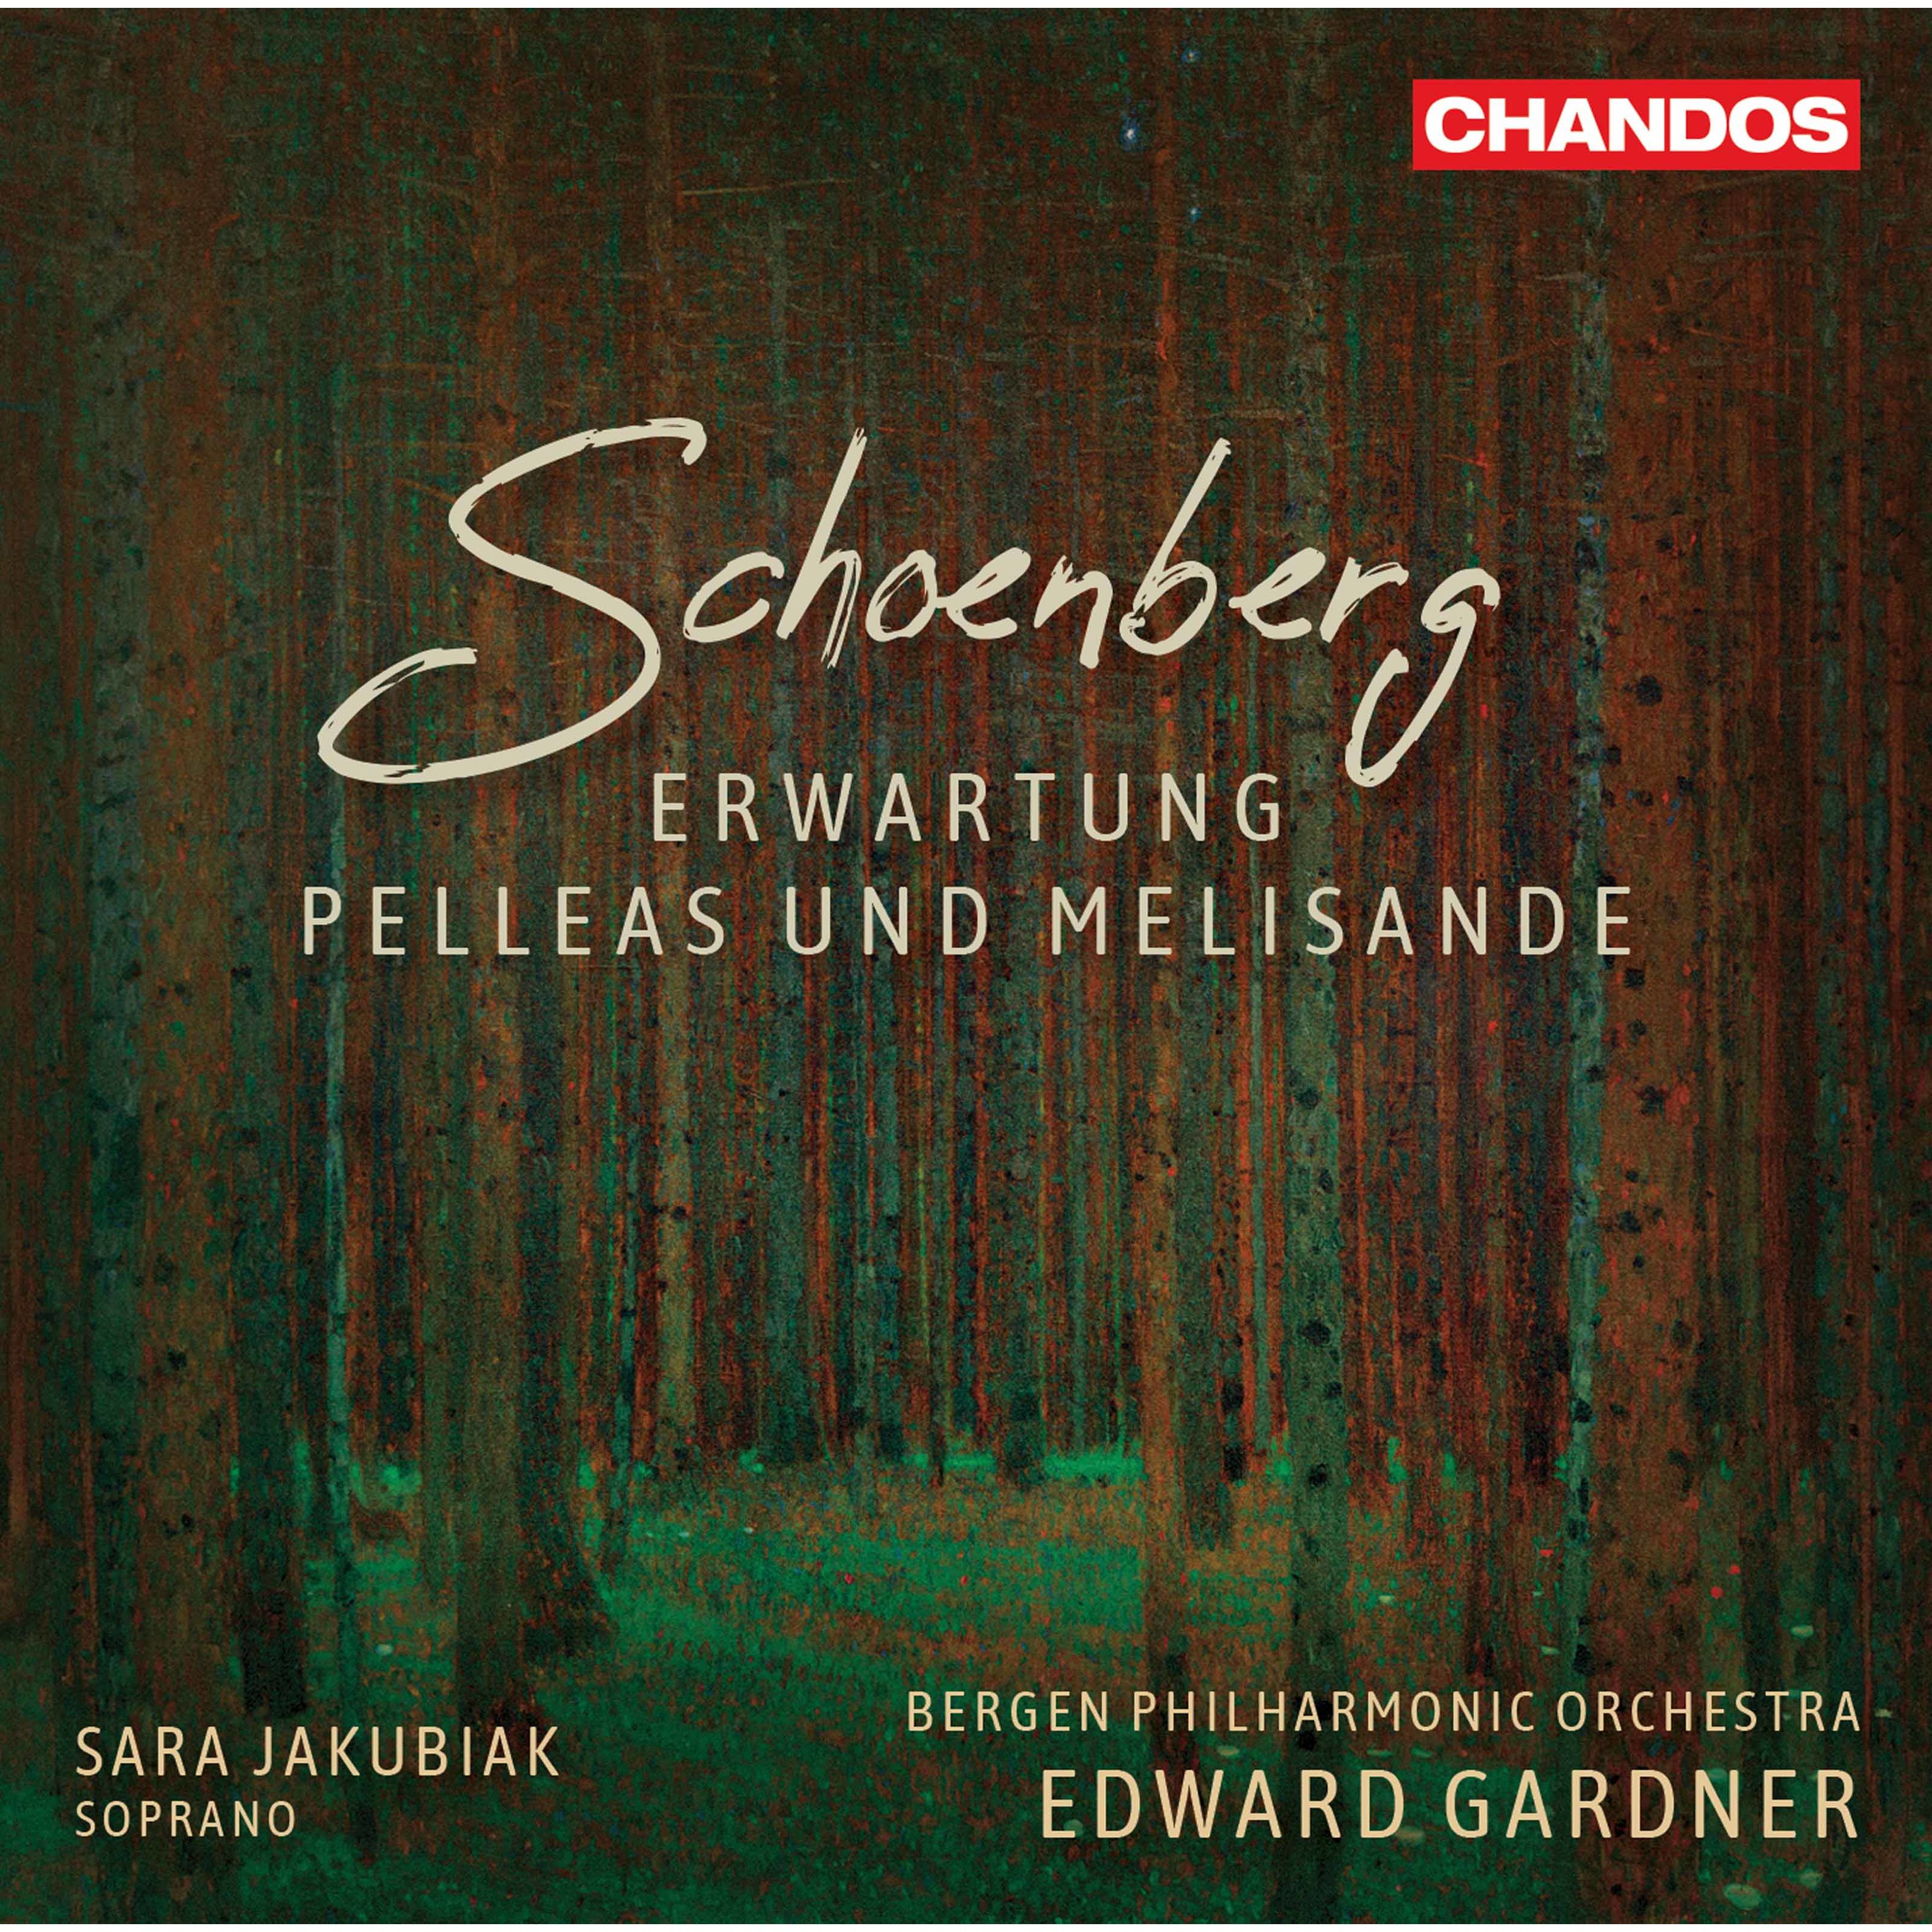 Edward Gardner, Bergen Philharmonic Orchestra, Sara Jakubiak – Schoenberg: Erwartung Op. 17 & Pelleas und Melisande Op. 5 (2020) [FLAC 24bit/96kHz]